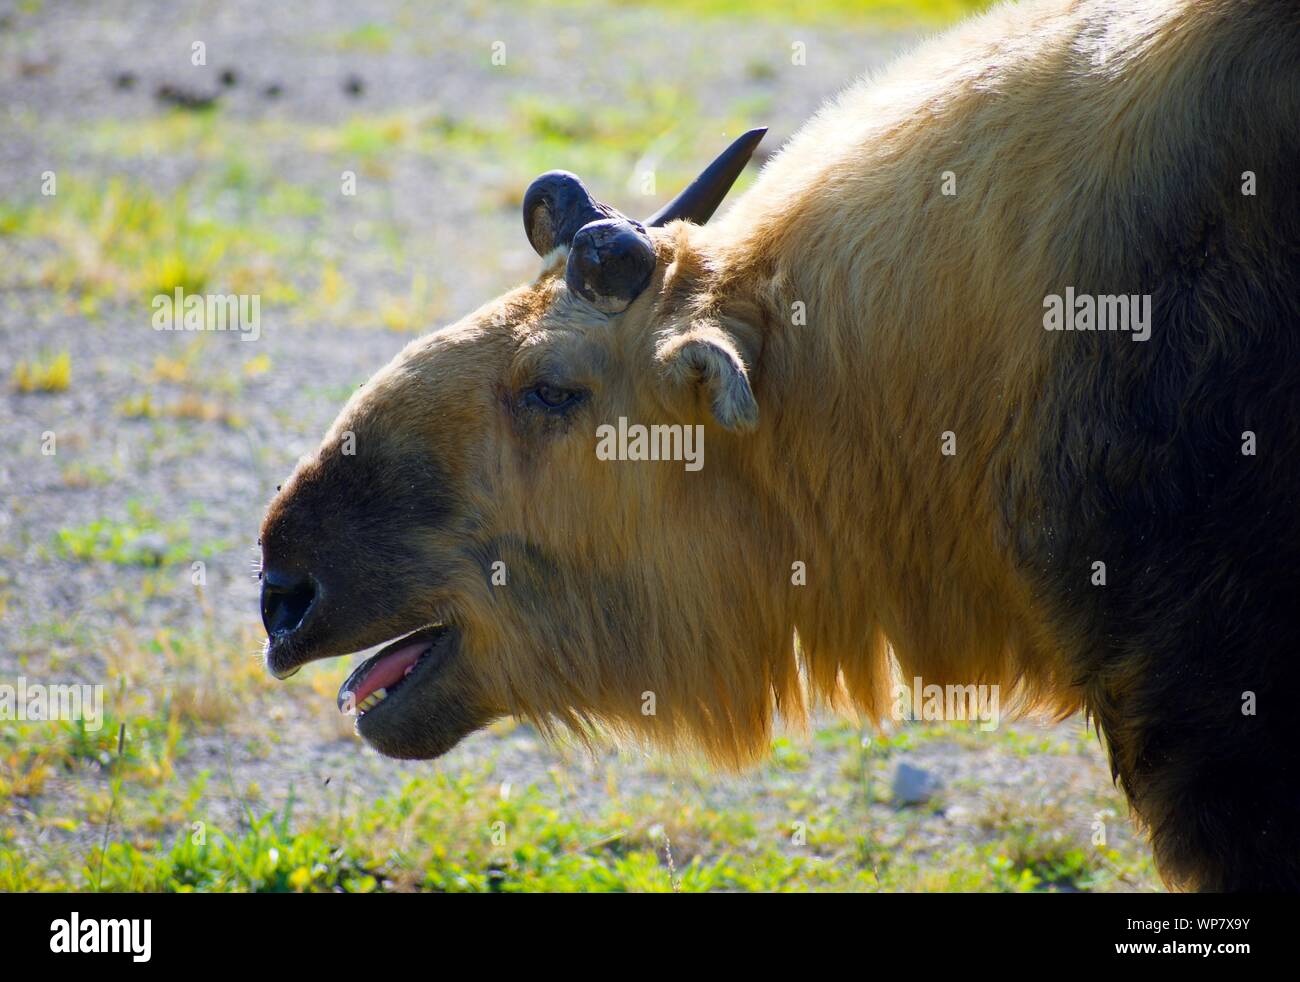 Sichuan Takin getrennt in das Feld ein. Budorcas taxicolor tibetana ist ein Schaf oder Ziege - wie Säugetier aus Westeuropa, China. Ist eine Erhaltung bedrohter Arten Stockfoto